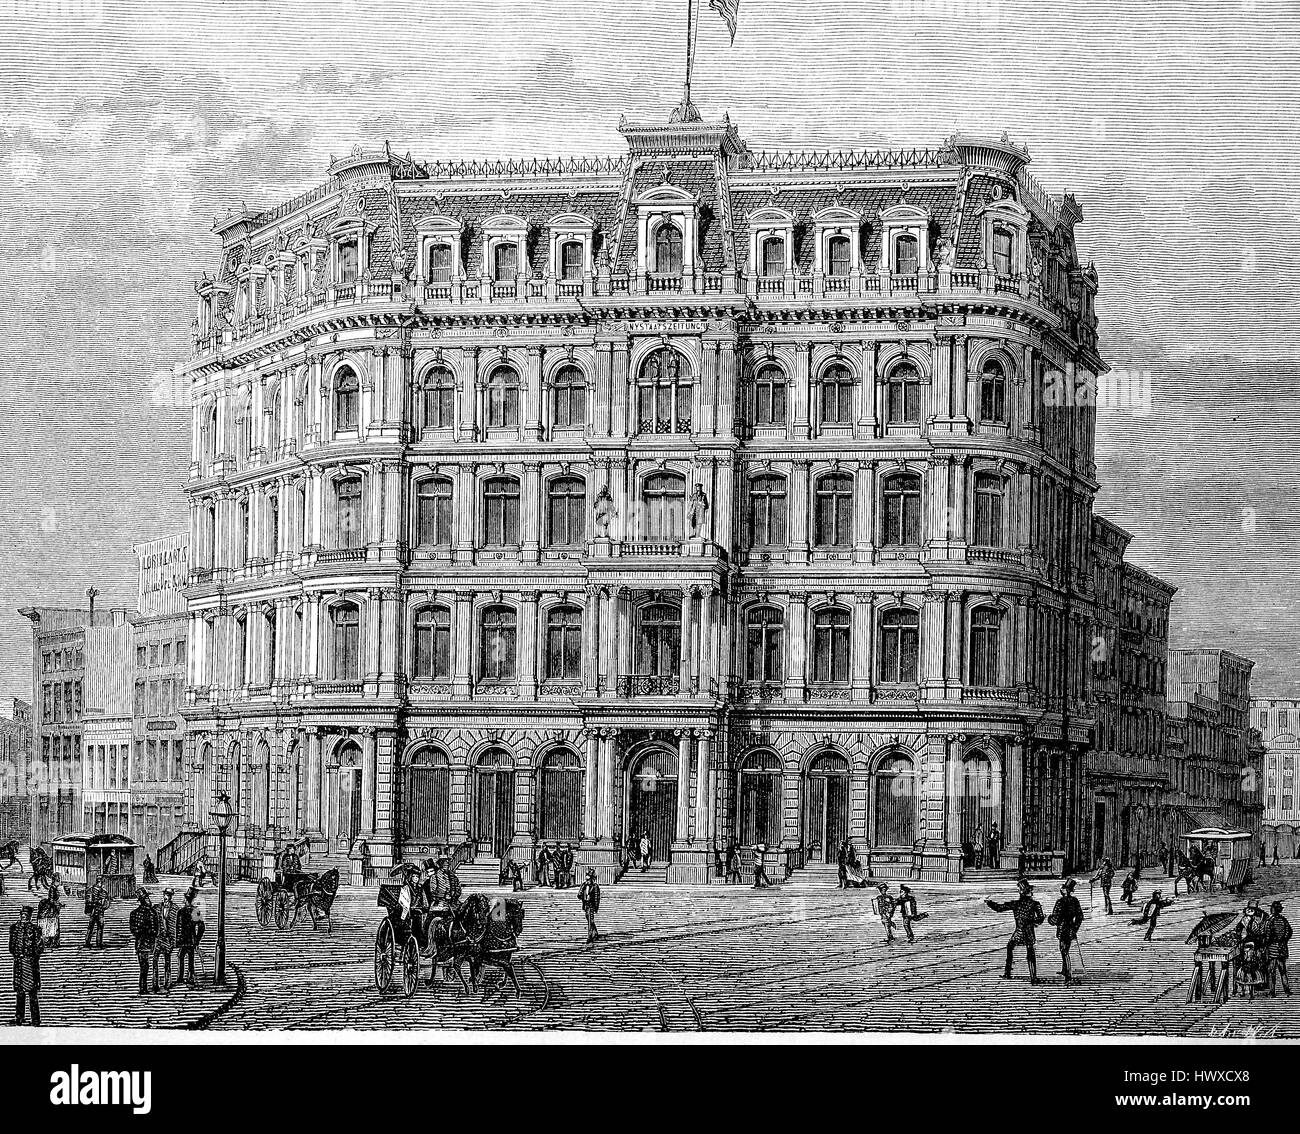 Das Gebäude des New York State Zeitung, der Workpalace in New York, Amerika, Reproduktion eines Bildes, Holzschnitt aus dem Jahr 1881, digital verbessert Stockfoto